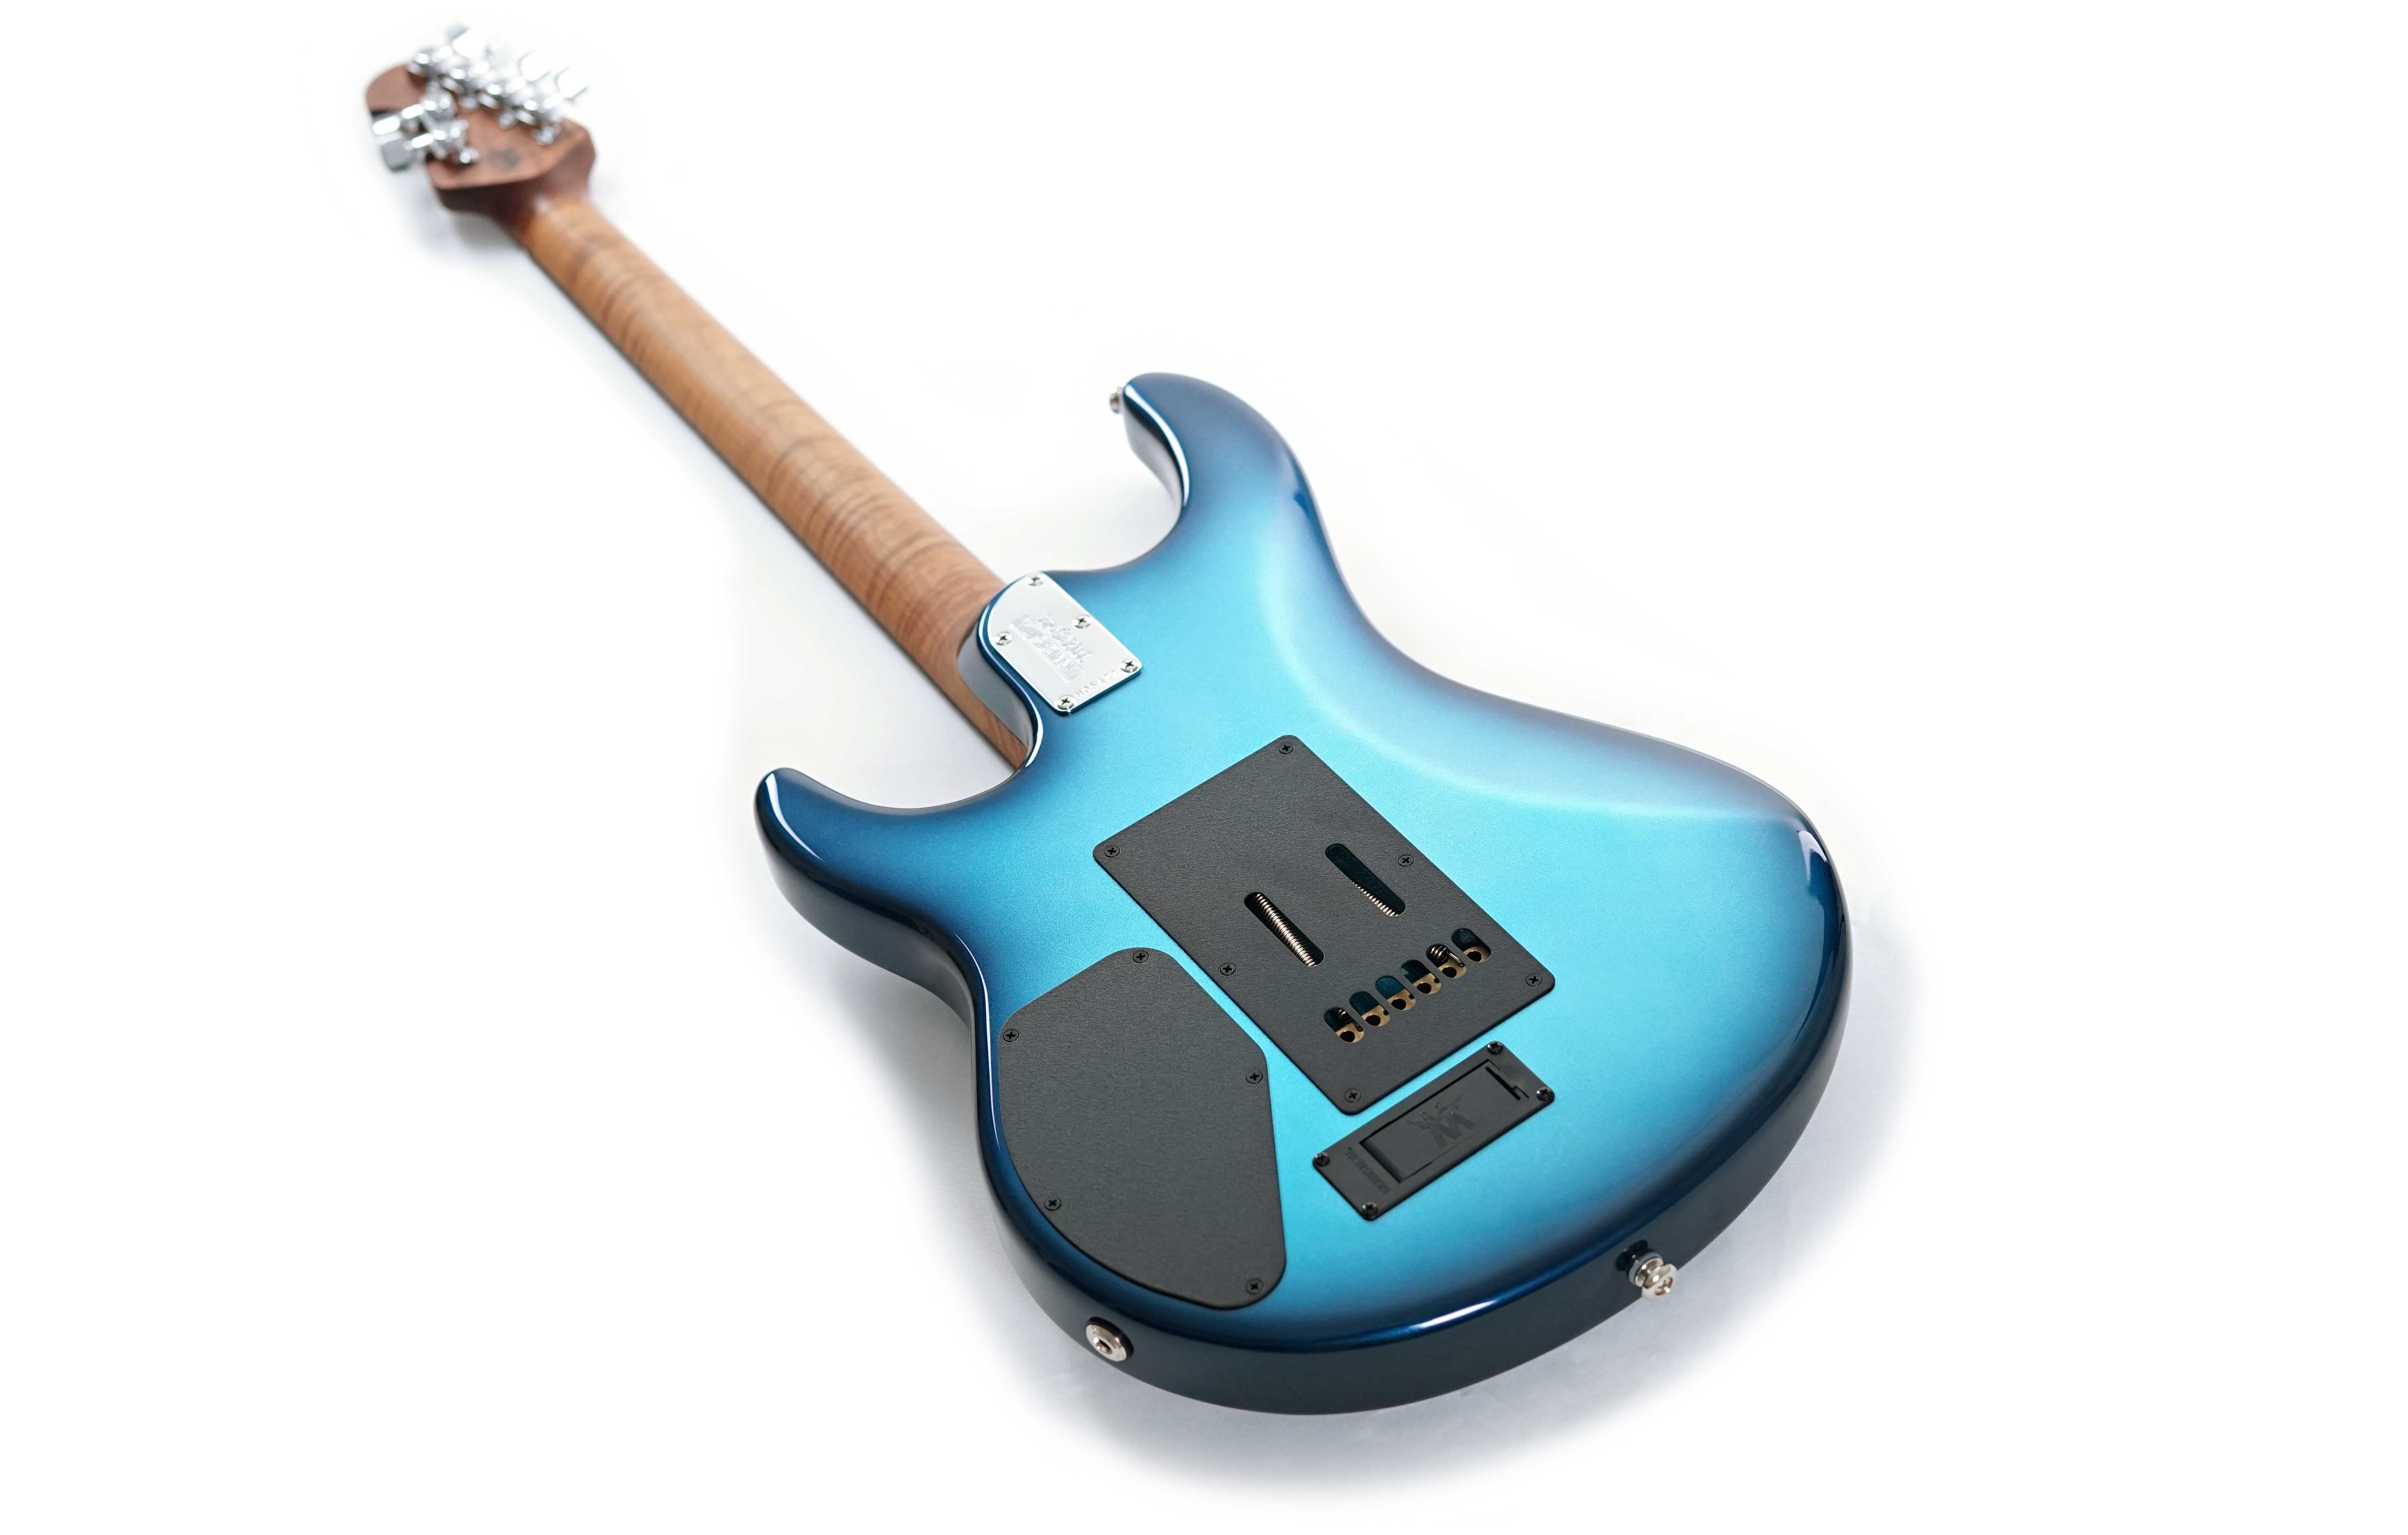 Ernie Ball Music Man Luke L4 SSS Trem Diesel Blue (632) - Willcutt Guitars